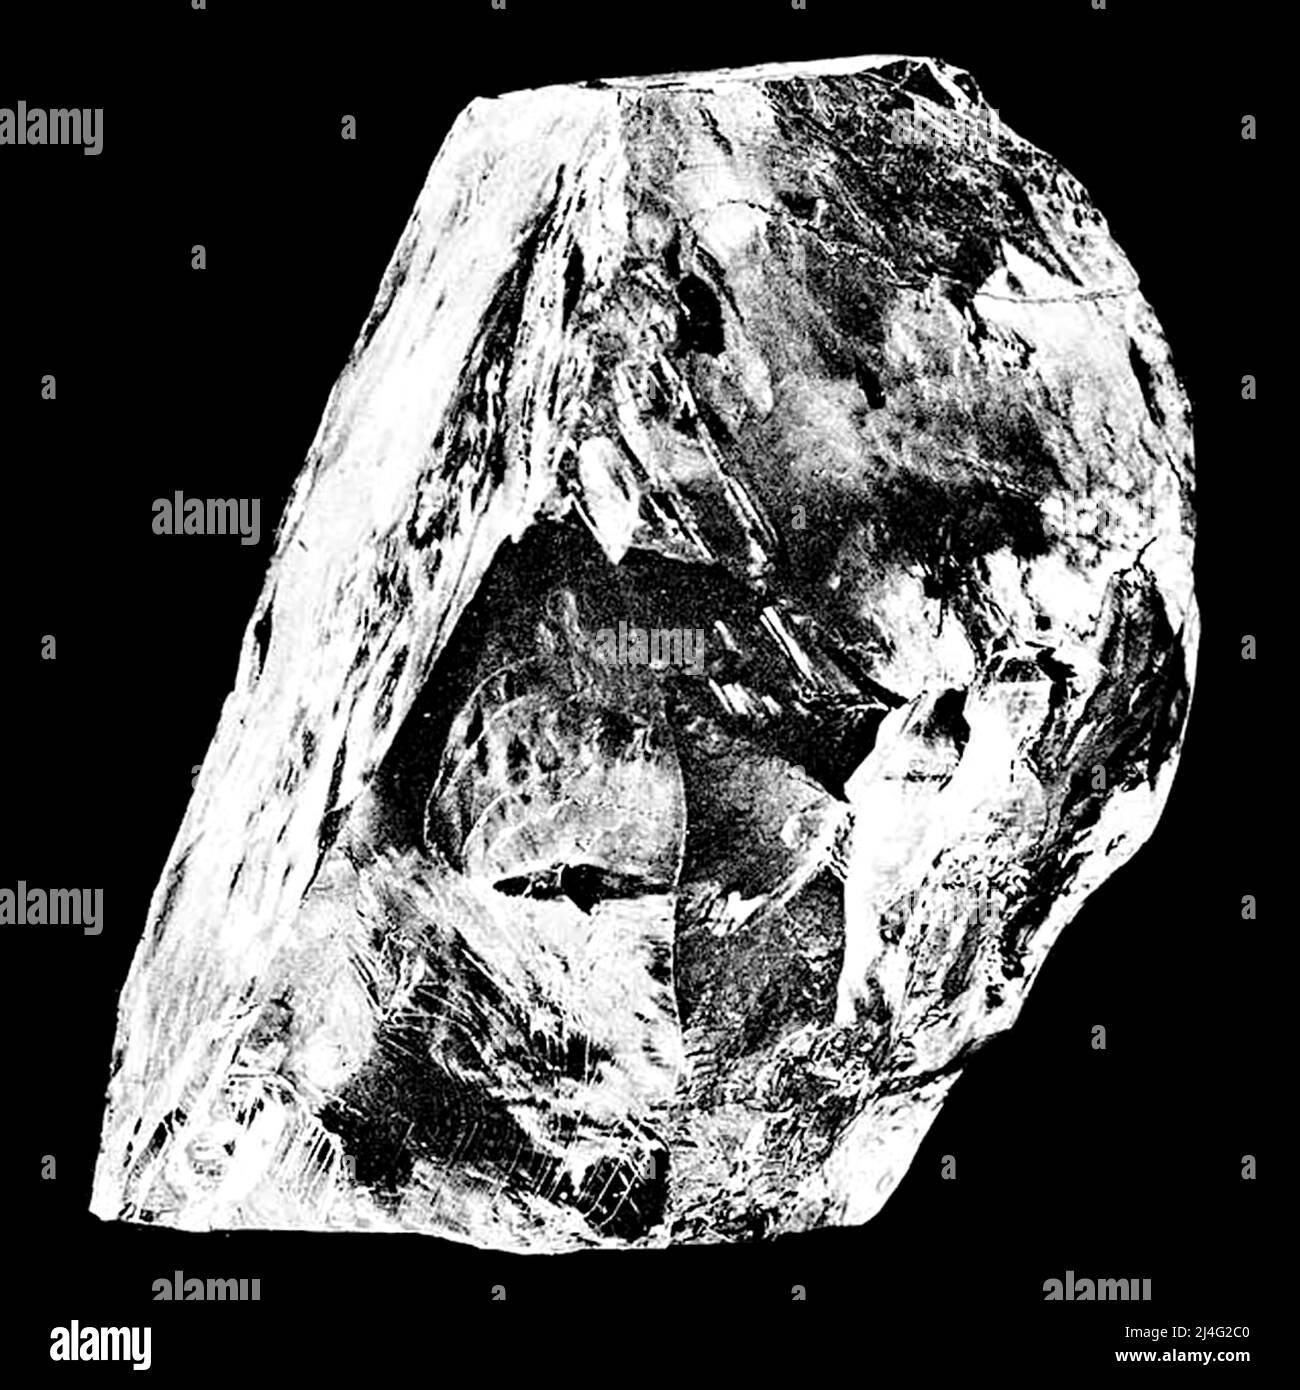 Il Cullinan Diamond, il più grande diamante grezzo di qualità gemma mai trovato pesando 3.106,75 carati scoperti alla miniera Premier No.2 a Cullinan, Sudafrica, il 26 gennaio 1905. Prende il nome da Thomas Cullinan, il presidente della miniera. Foto Stock